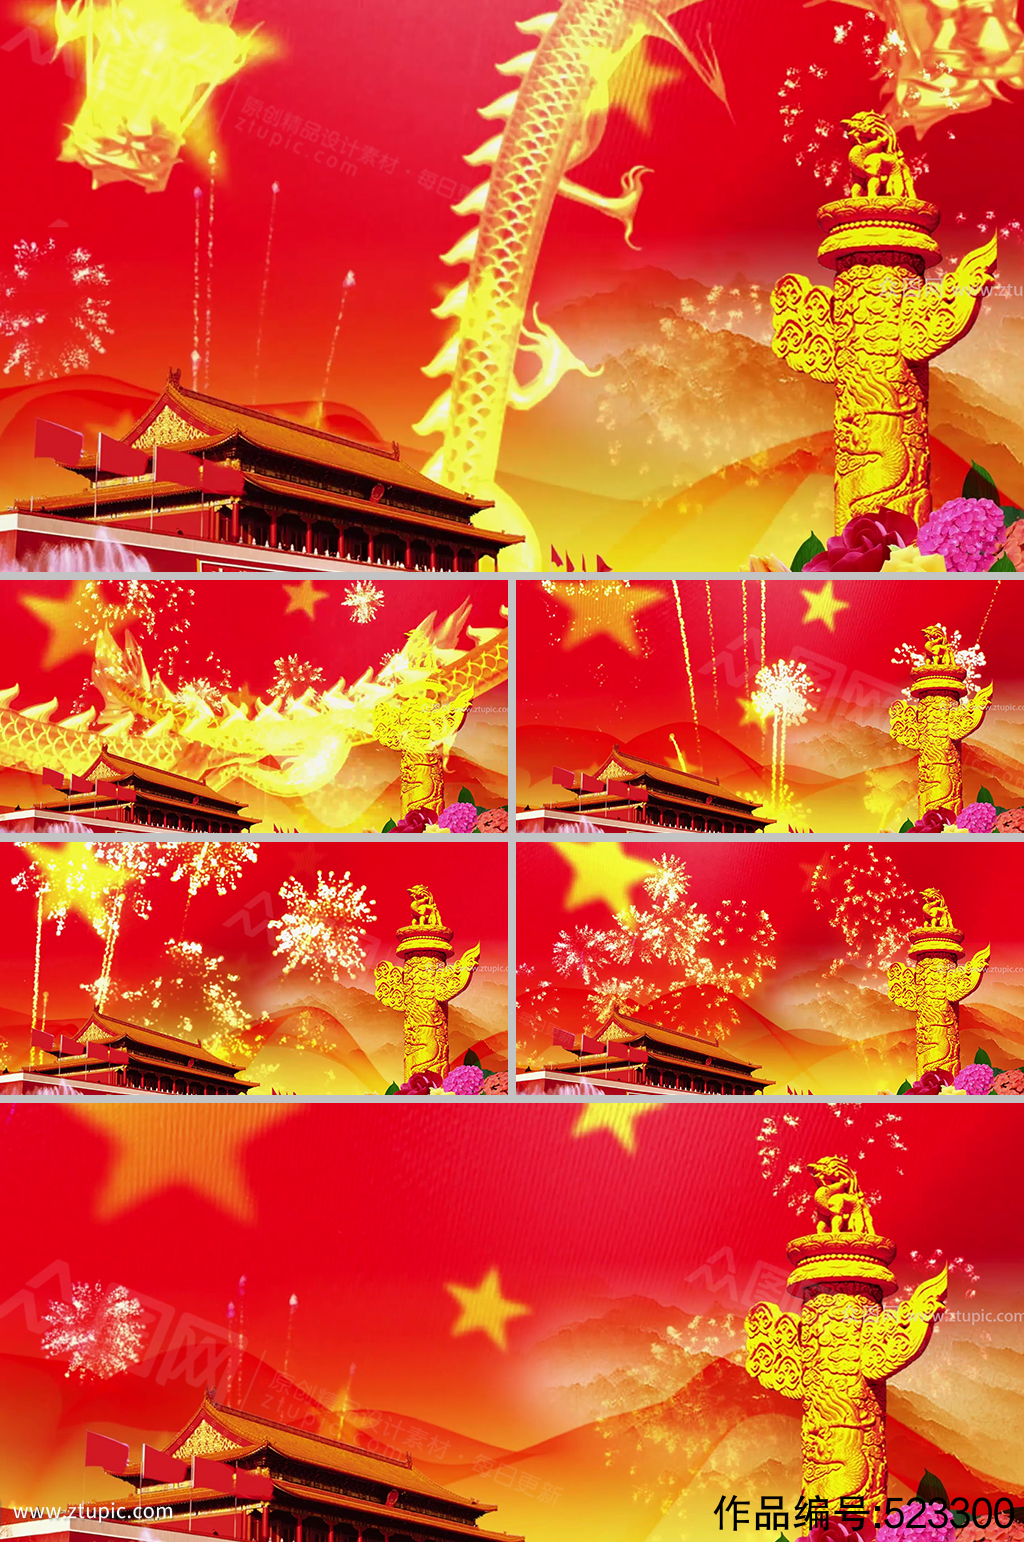 歌唱祖国国庆节党建背景视频素材